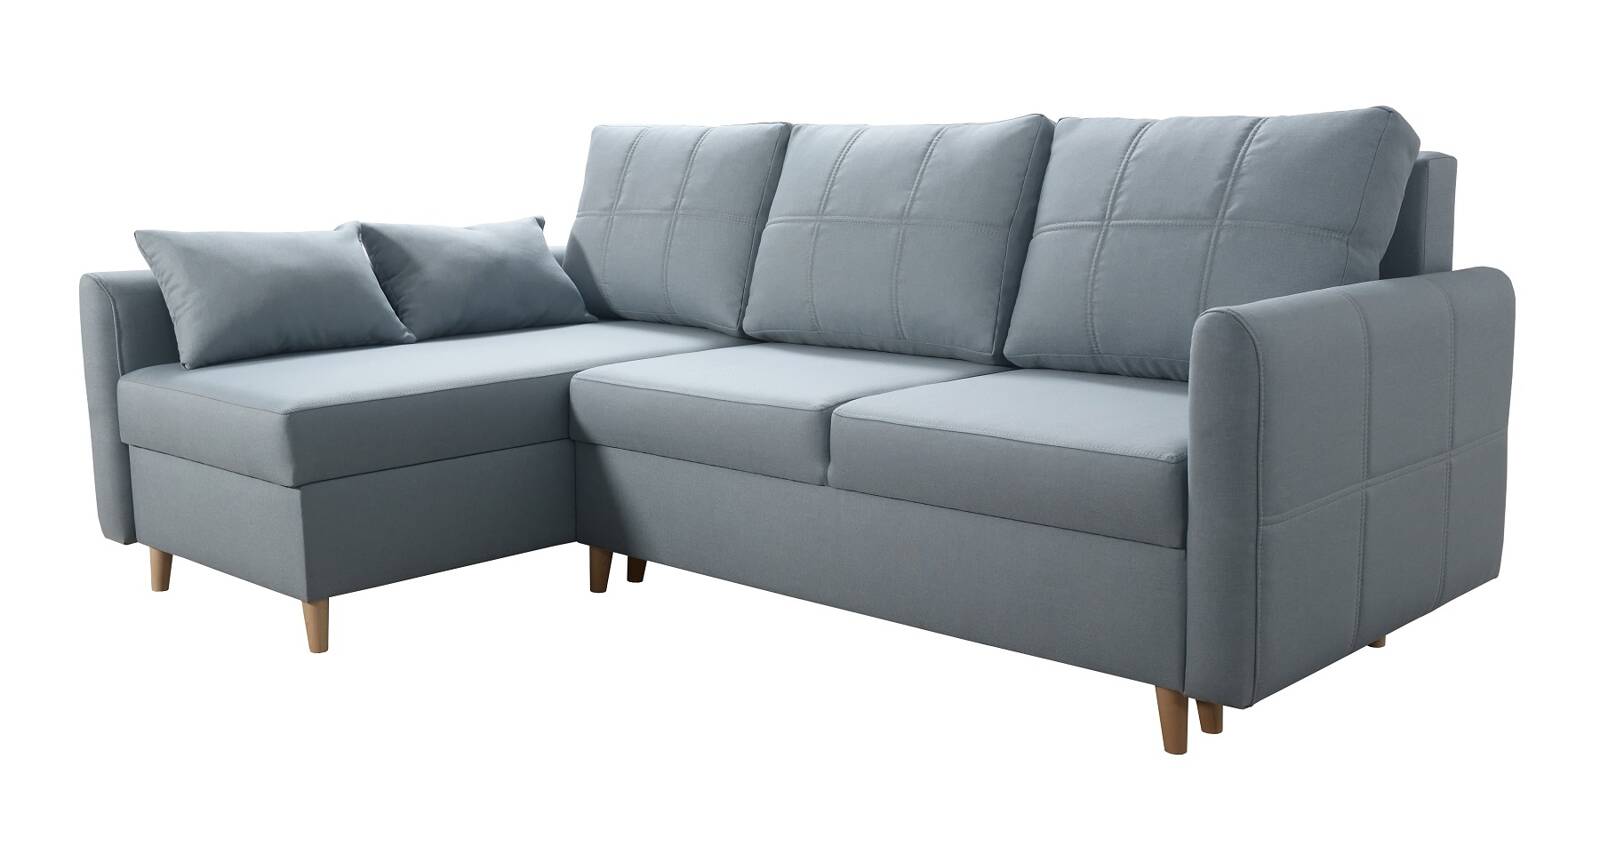 Ecksofa mit Schlaffunktion Nuoro arctic blue links modernes Design im  skandinavischen Stil, das sich in jede Einrichtung einfügt | Unsere Möbel  für alle - 24unseremoebel